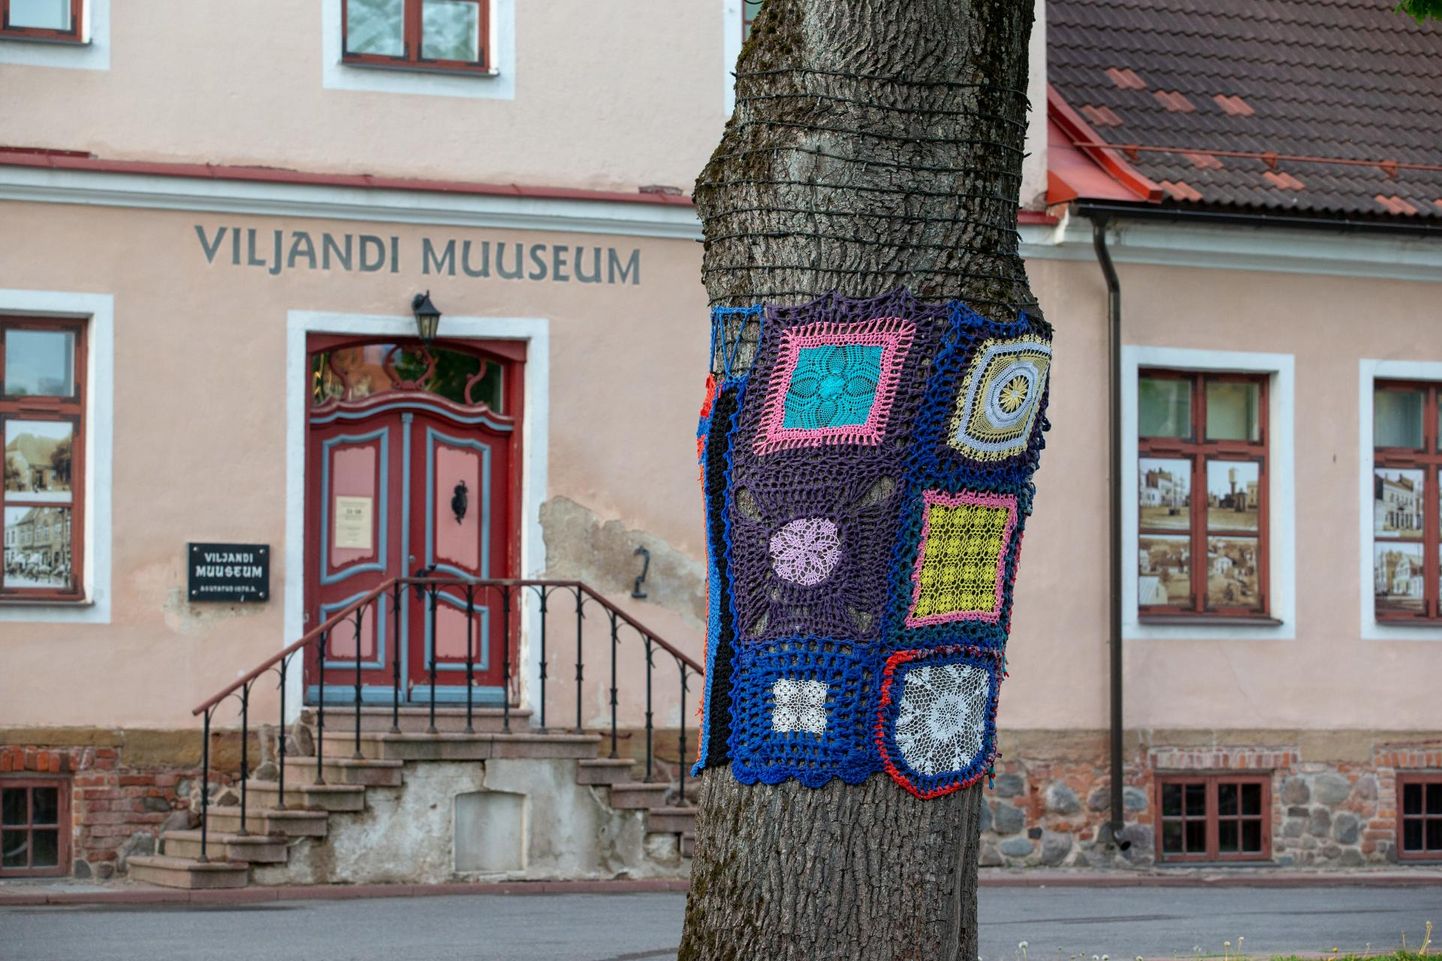 Lastele mõeldud muuseumifestivalil "Avatud mänguväljad" lööb kaasa 19 muuseumi ja raamatukogu, nende seas Viljandi muuseum.